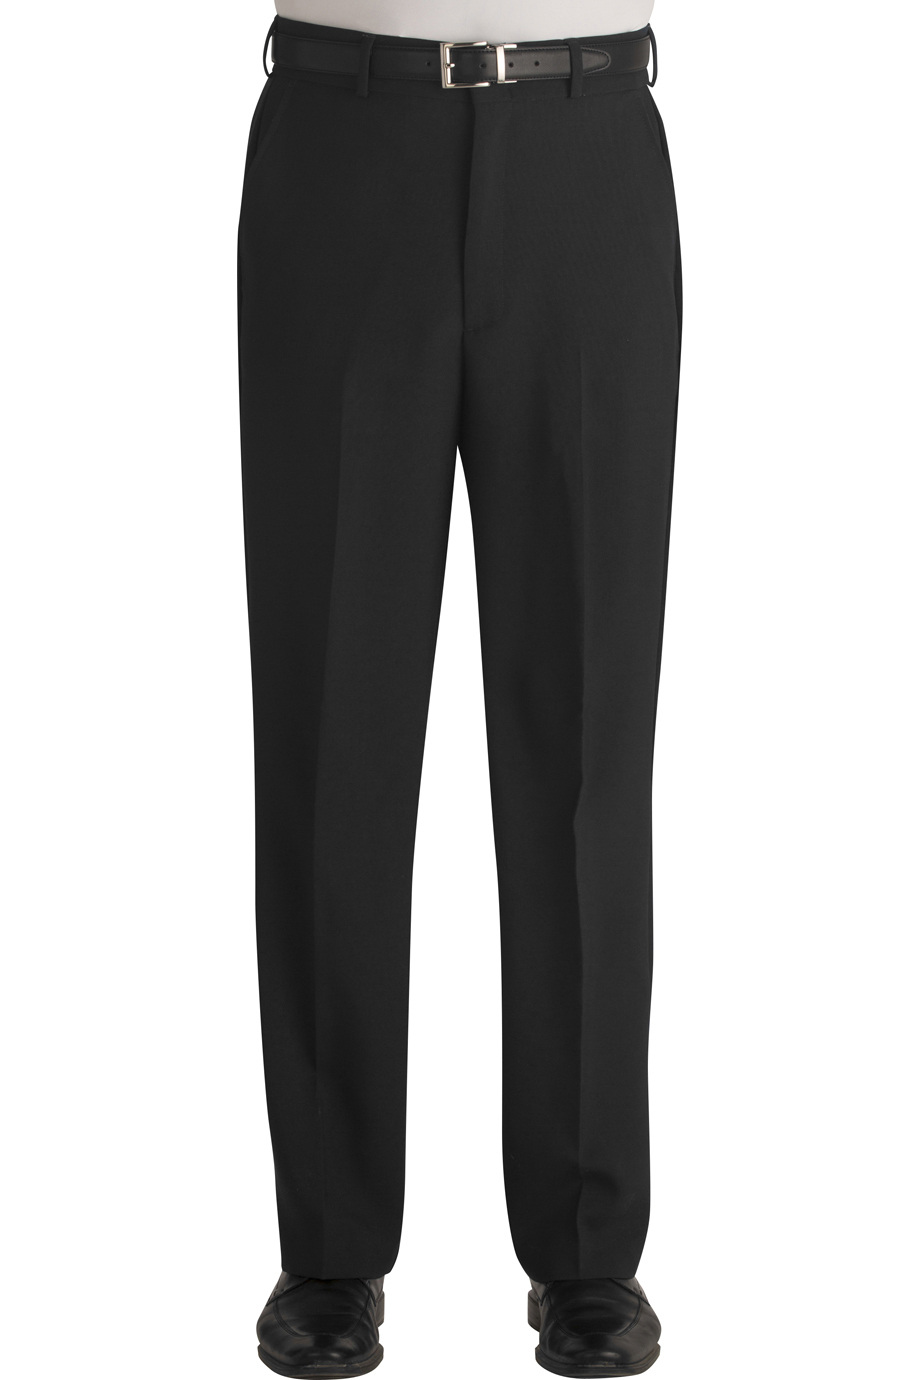 Edwards Garment 2290 - Men's Ployester Flat Front Pant